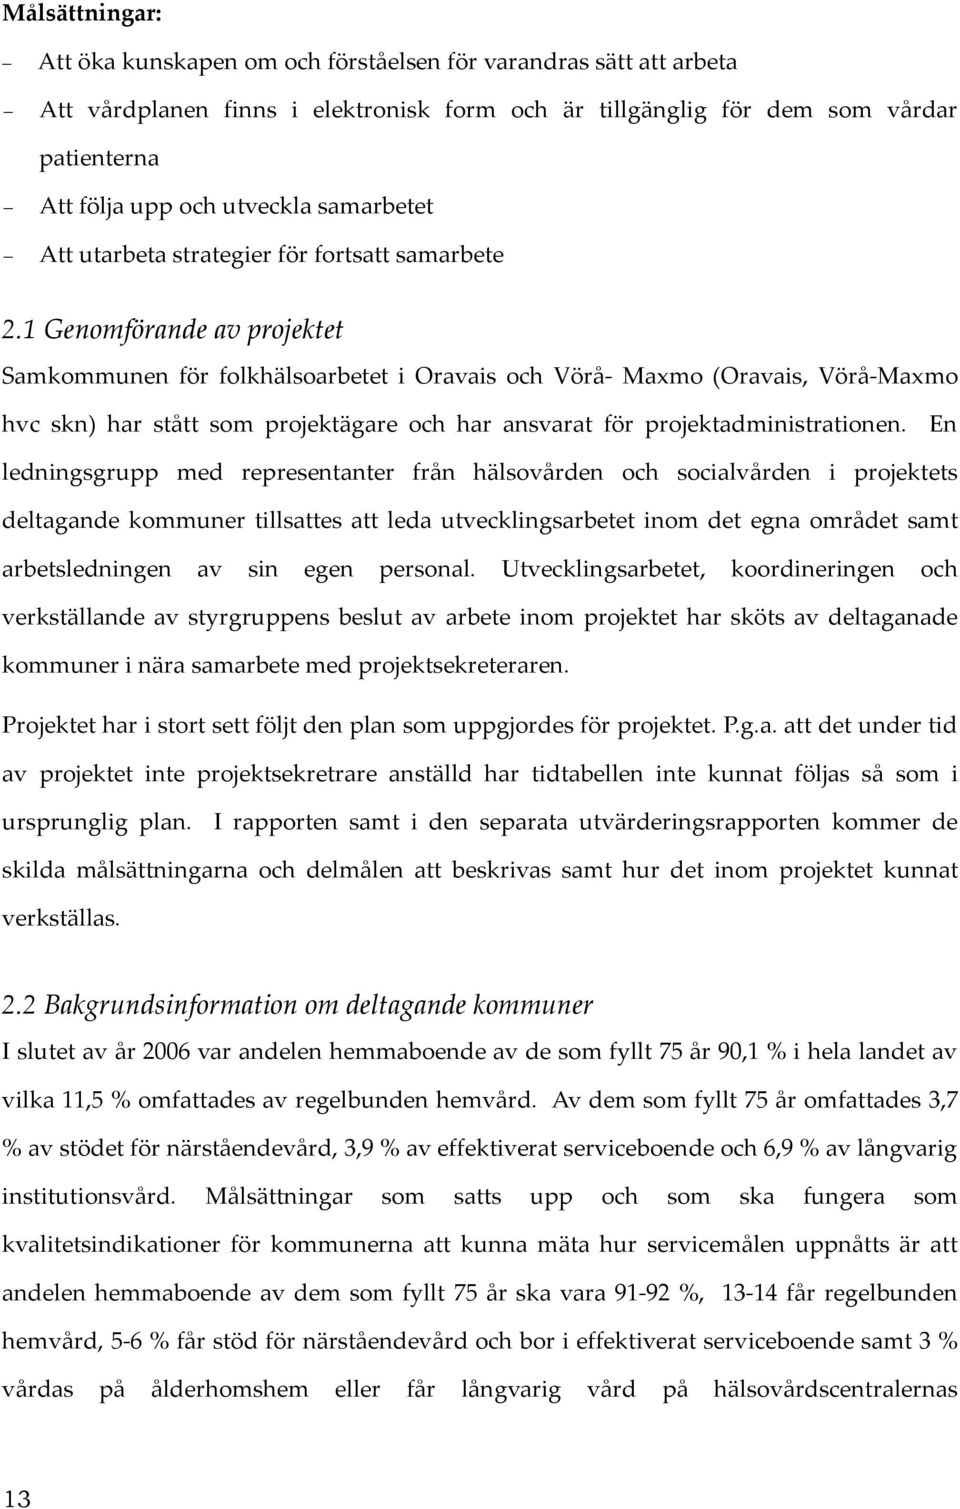 1 Genomförande av projektet Samkommunen för folkhälsoarbetet i Oravais och Vörå- Maxmo (Oravais, Vörå-Maxmo hvc skn) har stått som projektägare och har ansvarat för projektadministrationen.